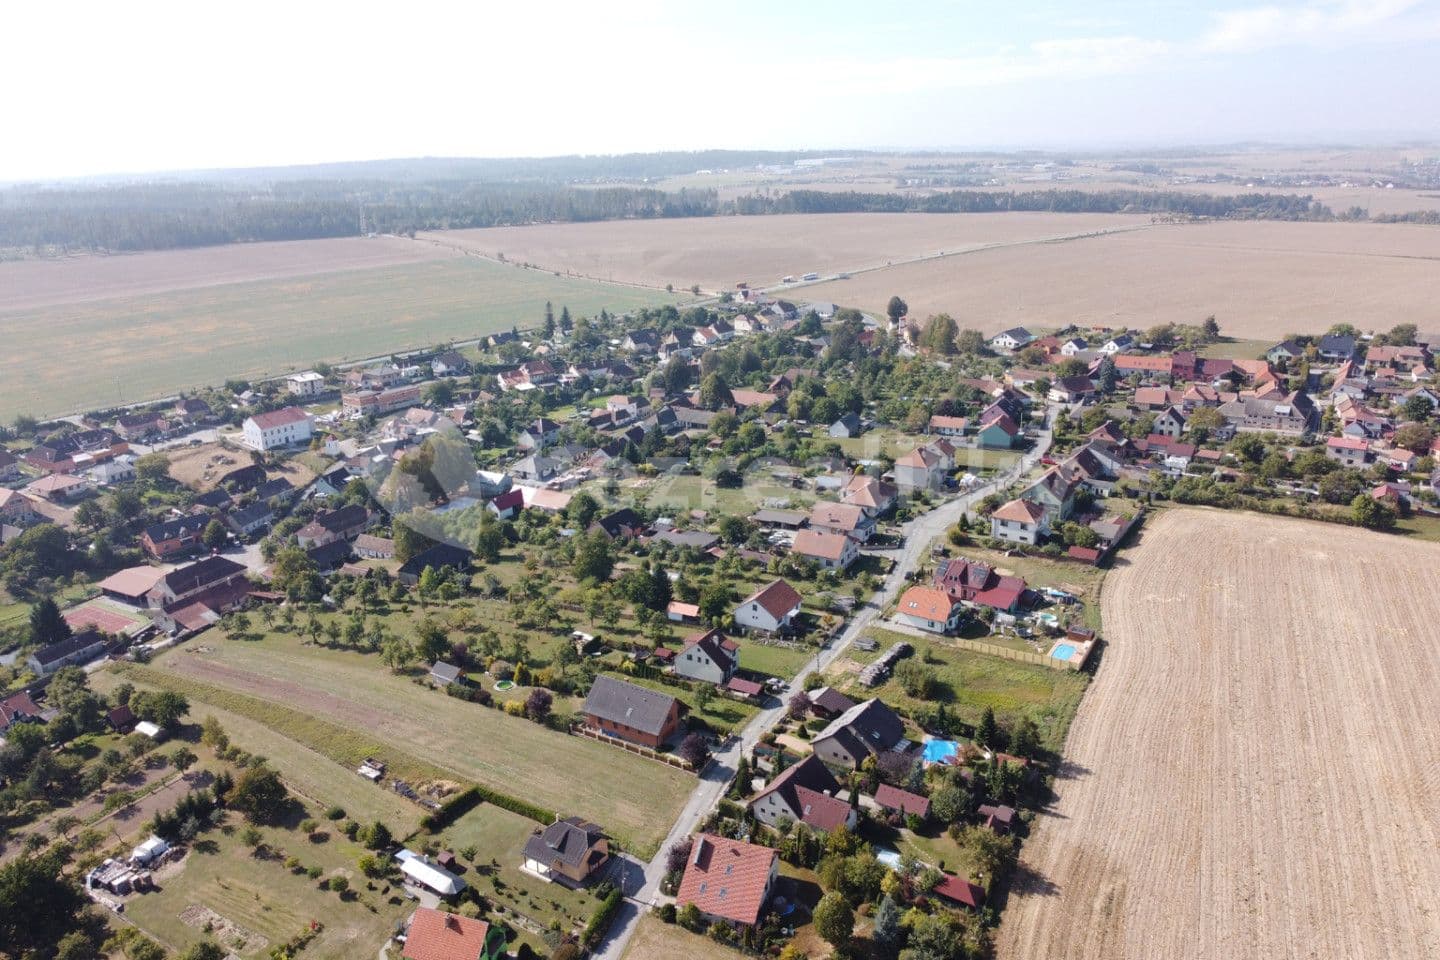 plot for sale, 1,250 m², Přibyslavice, Jihomoravský Region